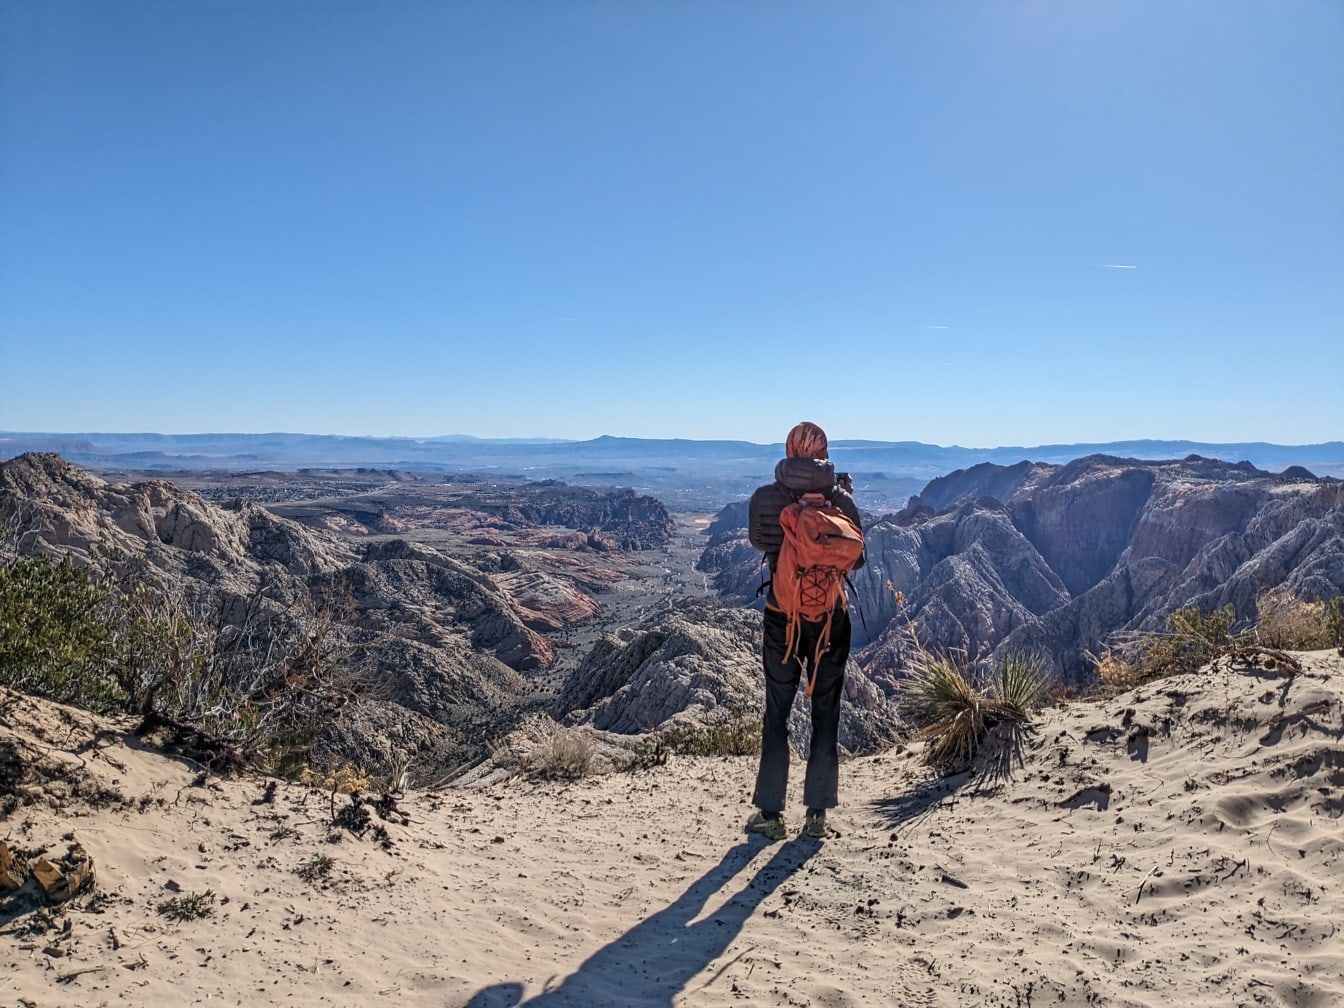 Randonneur routard debout sur une falaise désertique et profitant du panorama de la vallée désertique